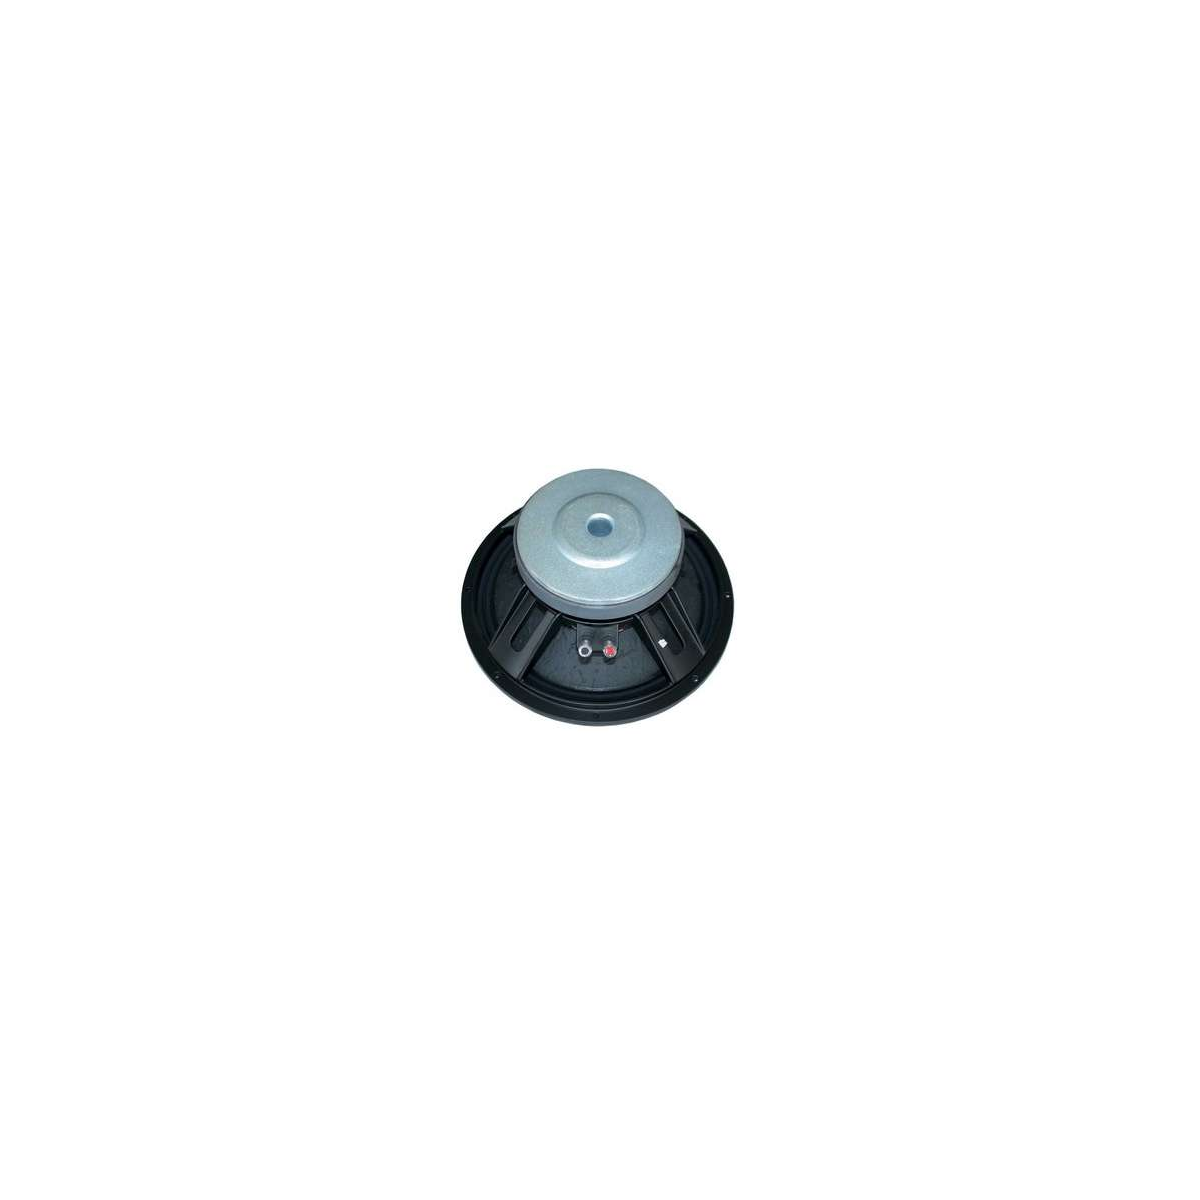 Hauts parleurs basse fréquence - Definitive Audio - F 1503 A